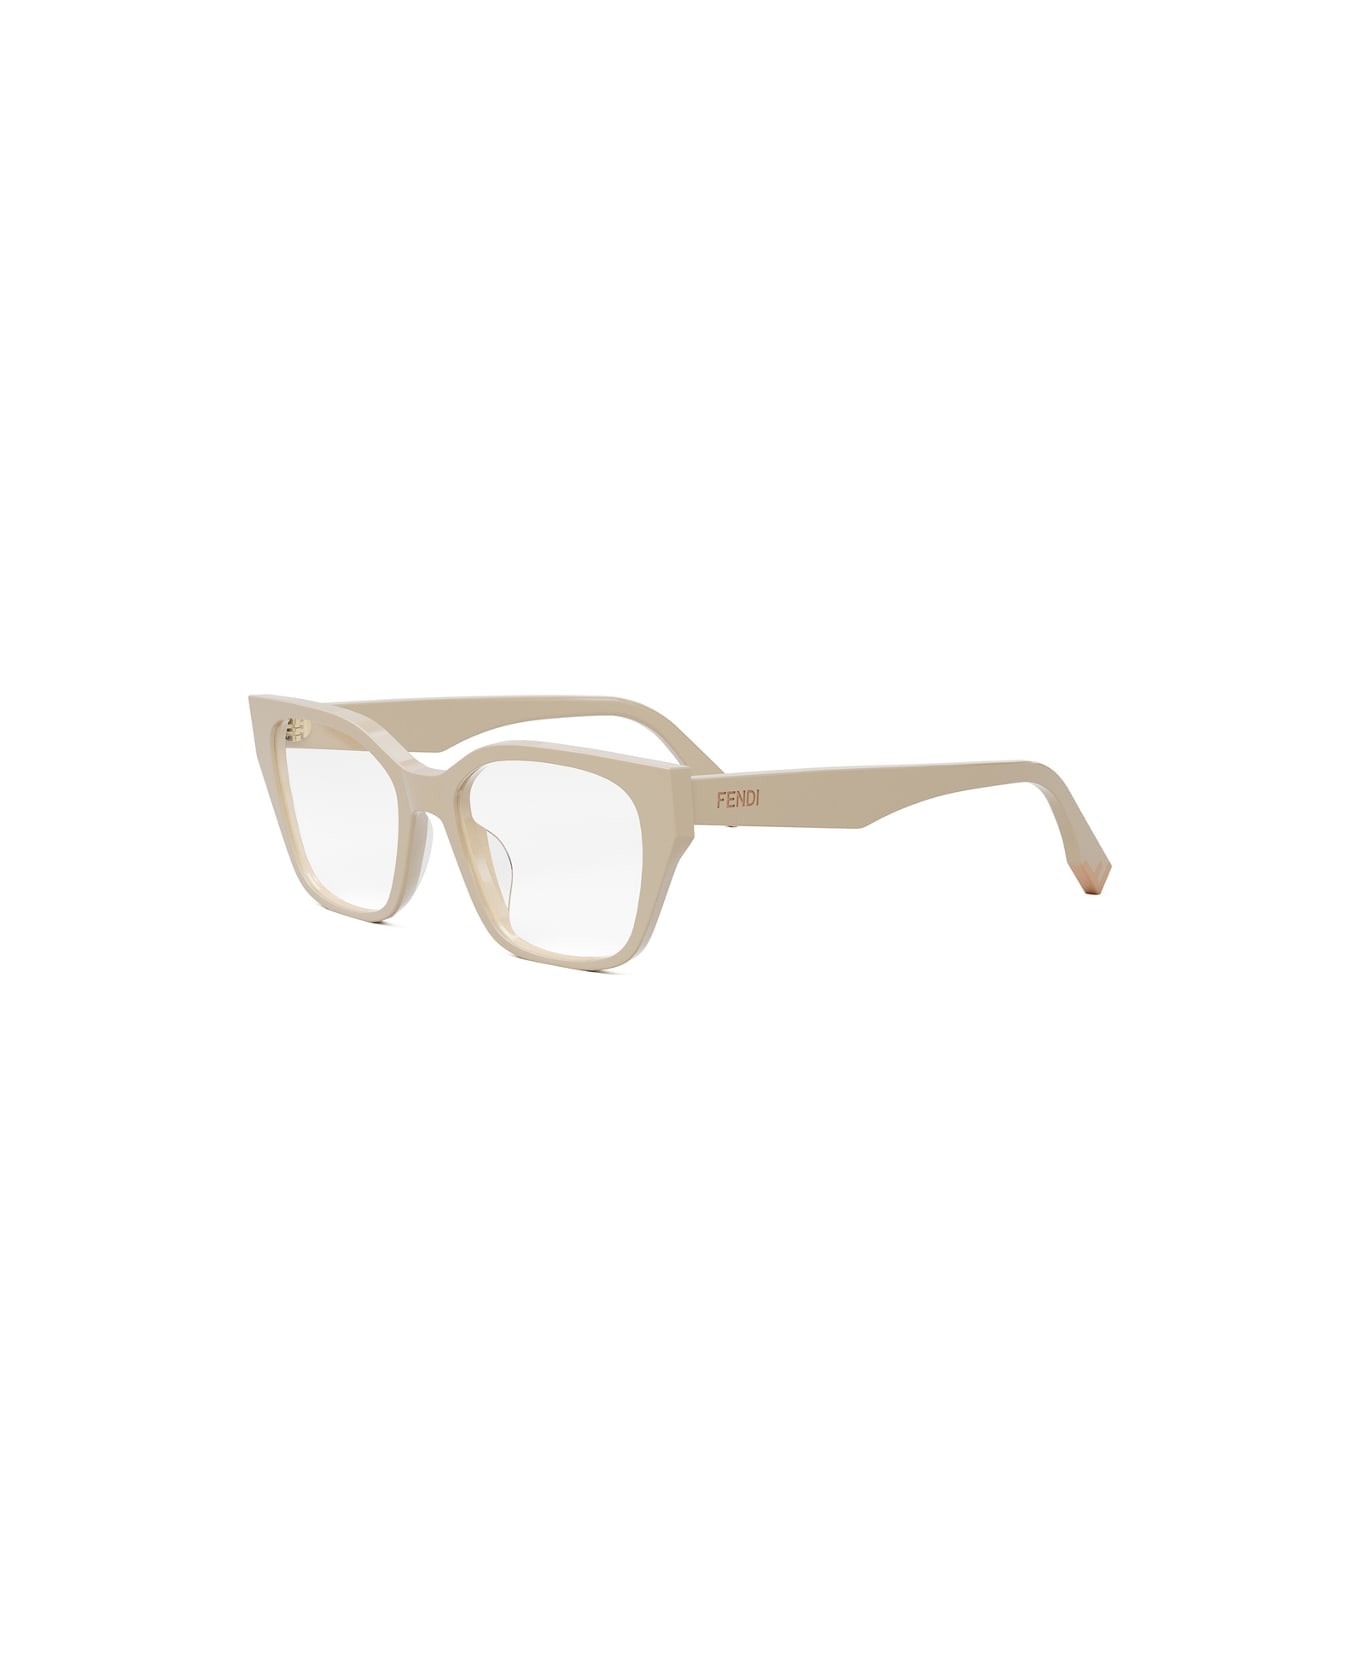 Fendi Eyewear FE50001i 057 Glasses - Panna アイウェア